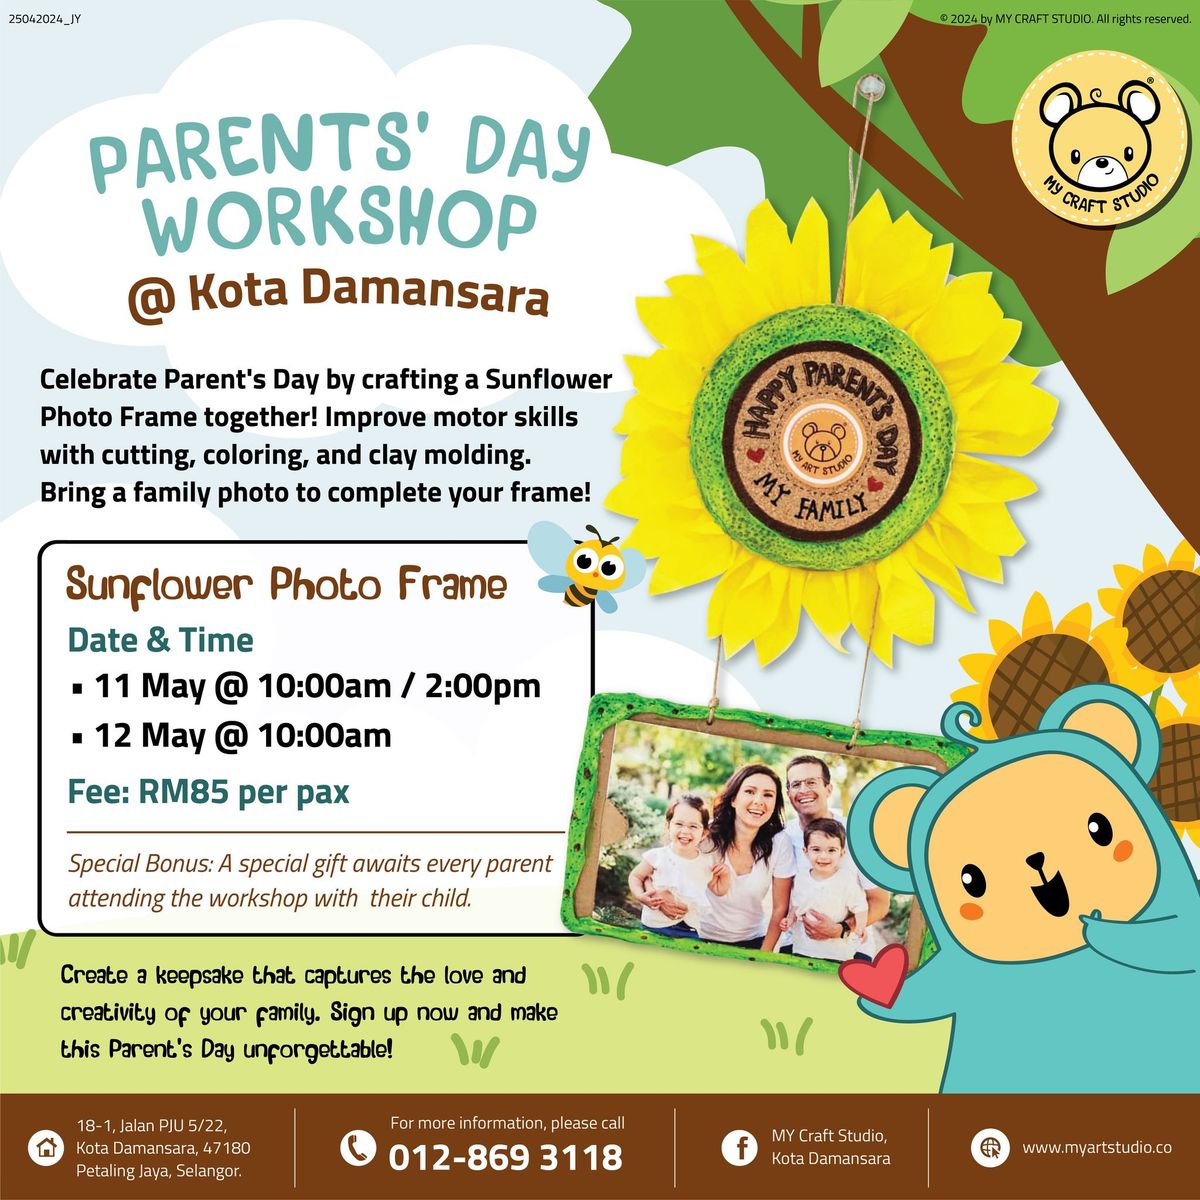 Parents' Day Workshop